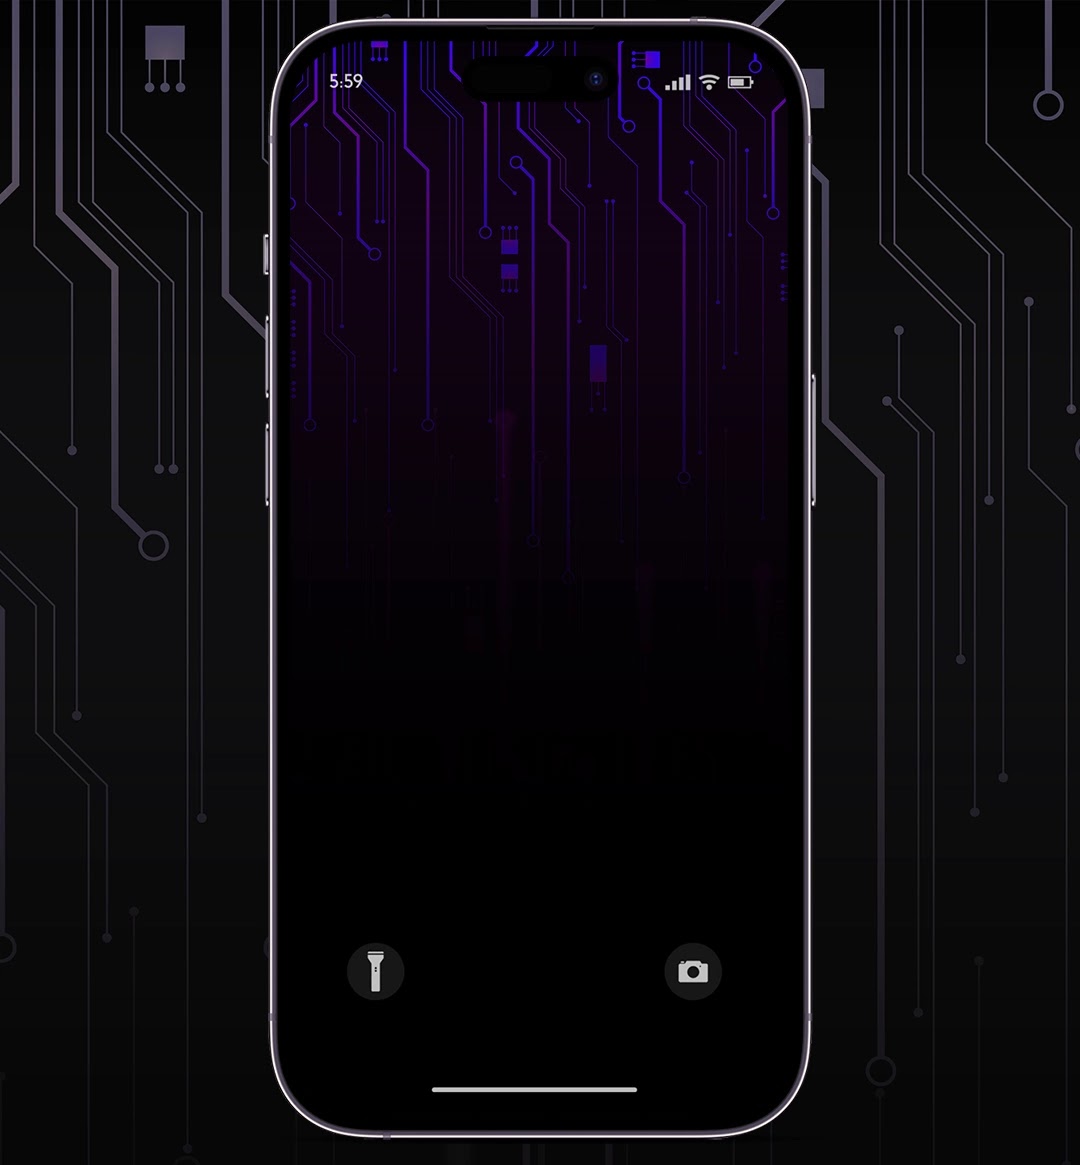 Phone wallpaper 4k - Circuit 